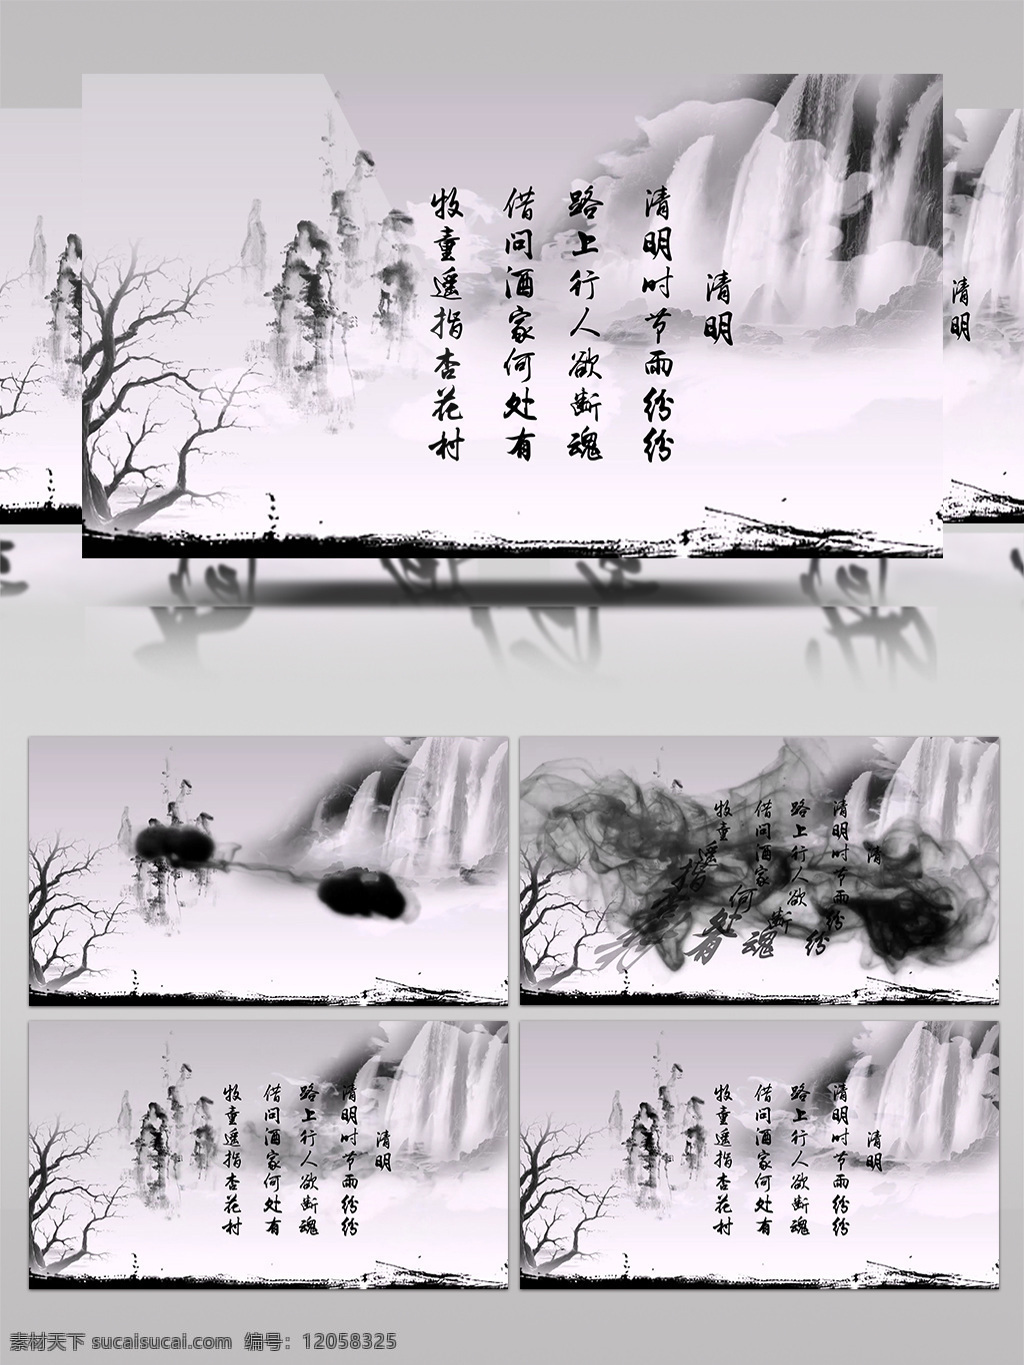 优雅 中国 风 传统 水墨 展示 宣传 ae 模板 中国风 墨竹 竹子 小桥 流水 aecc 诗意 诗情画意